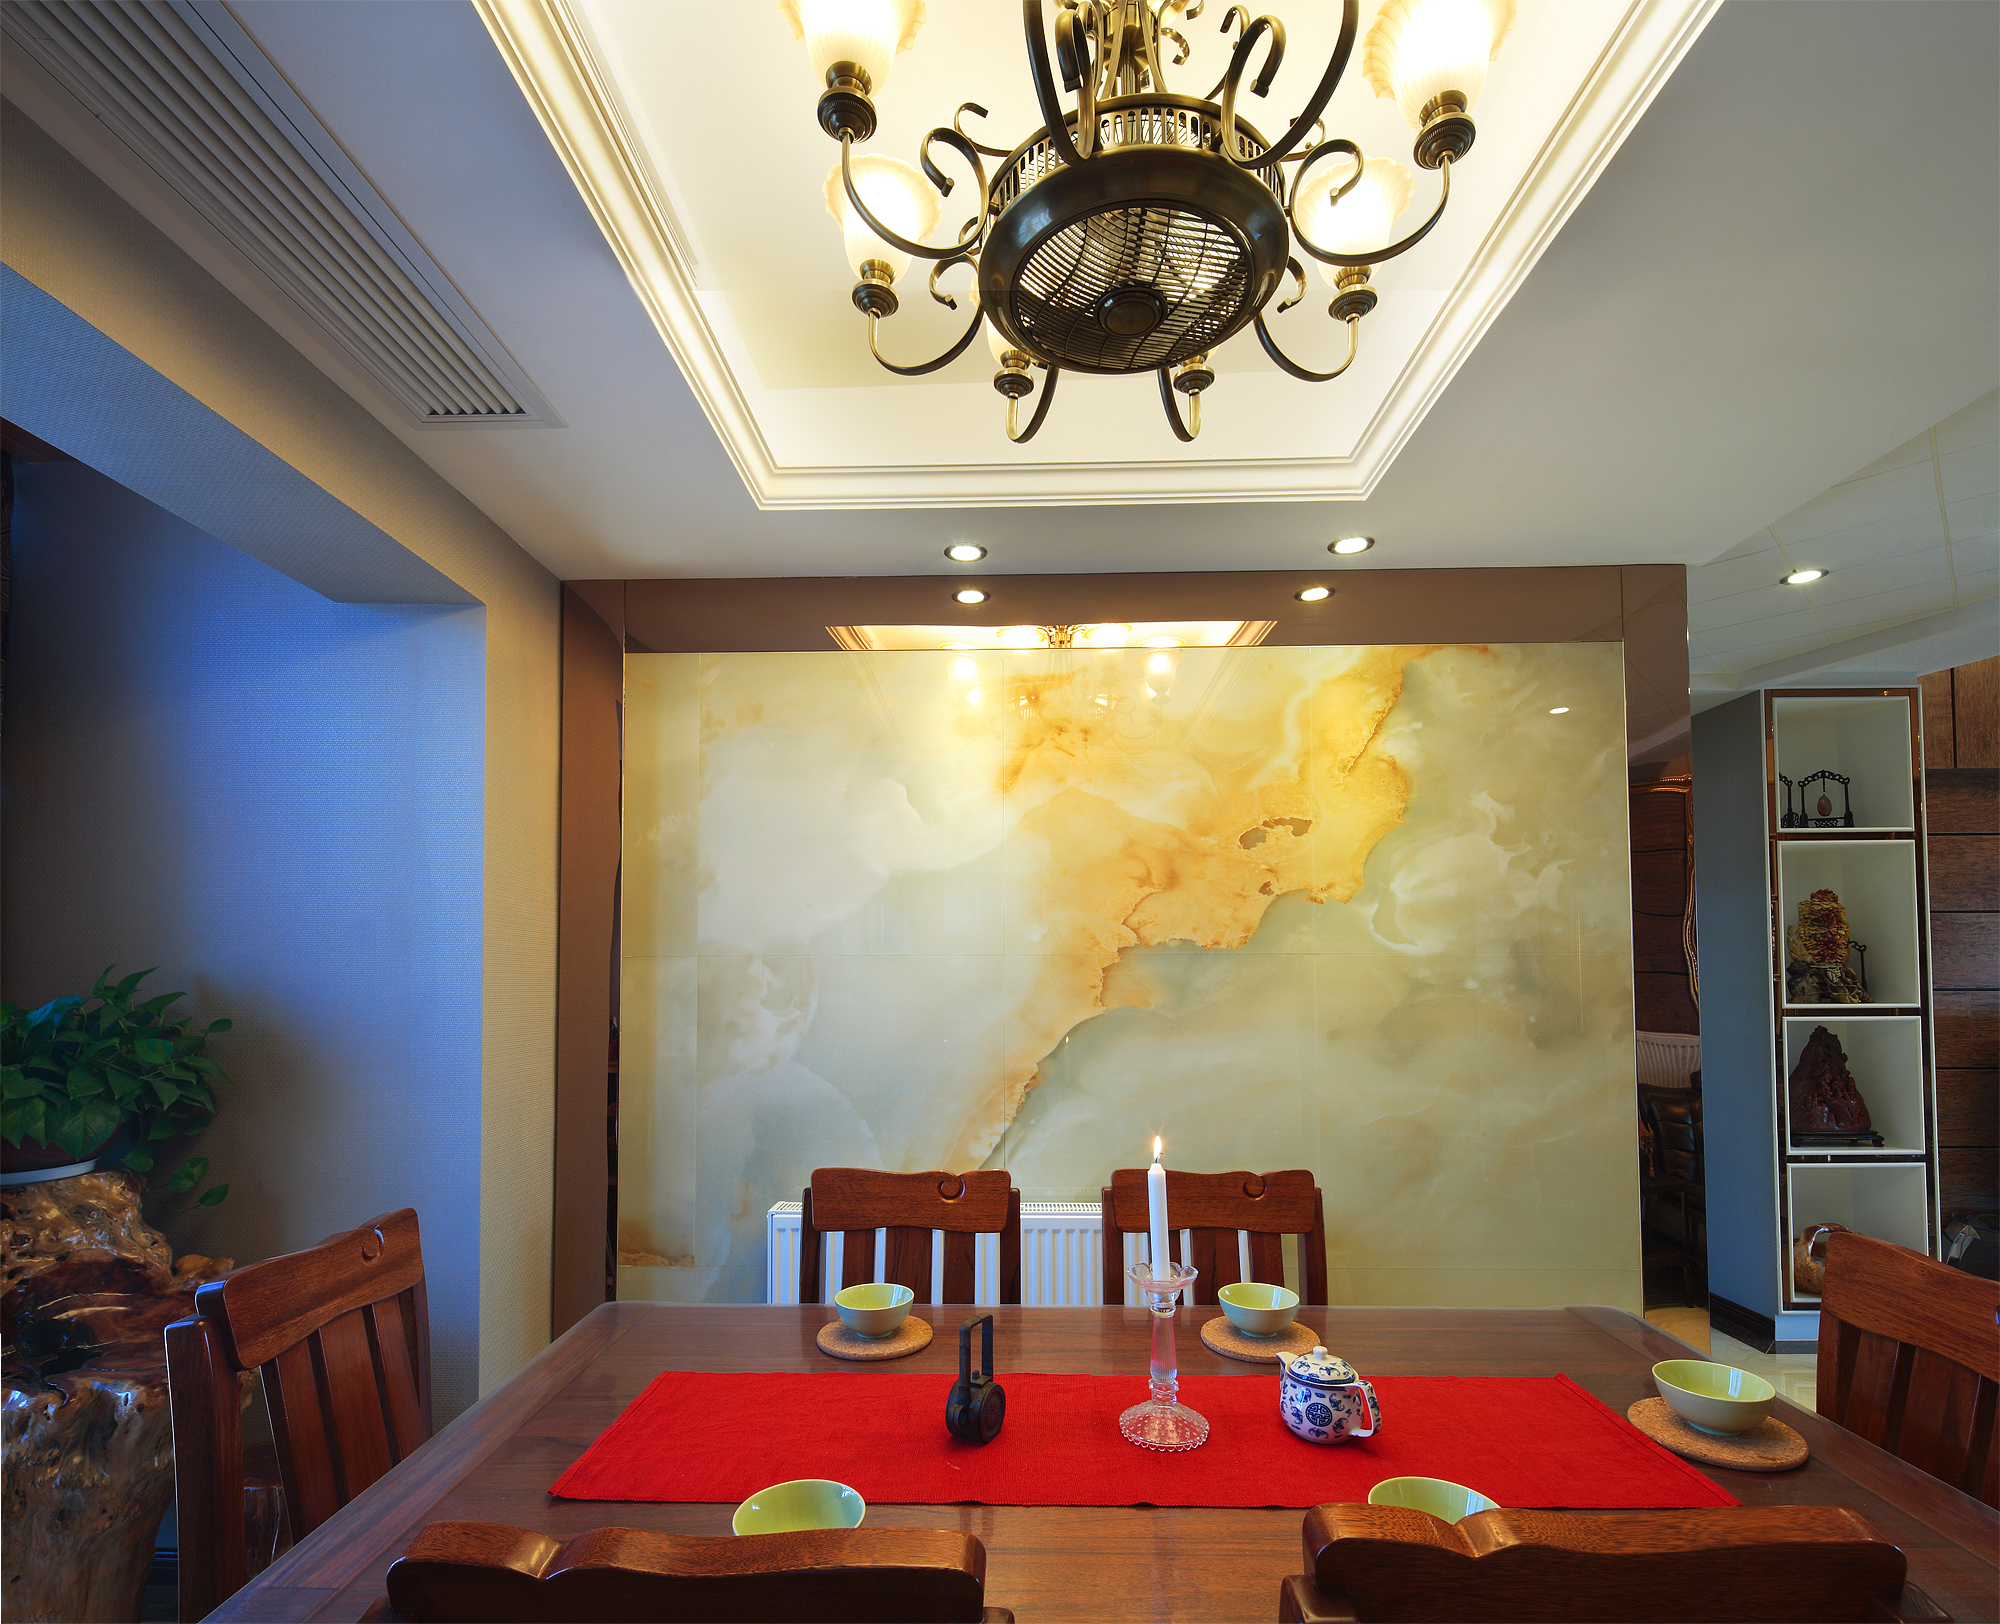 混搭 一号家居 餐厅图片来自武汉一号家居在葛洲坝世际花园完工实景效果图的分享